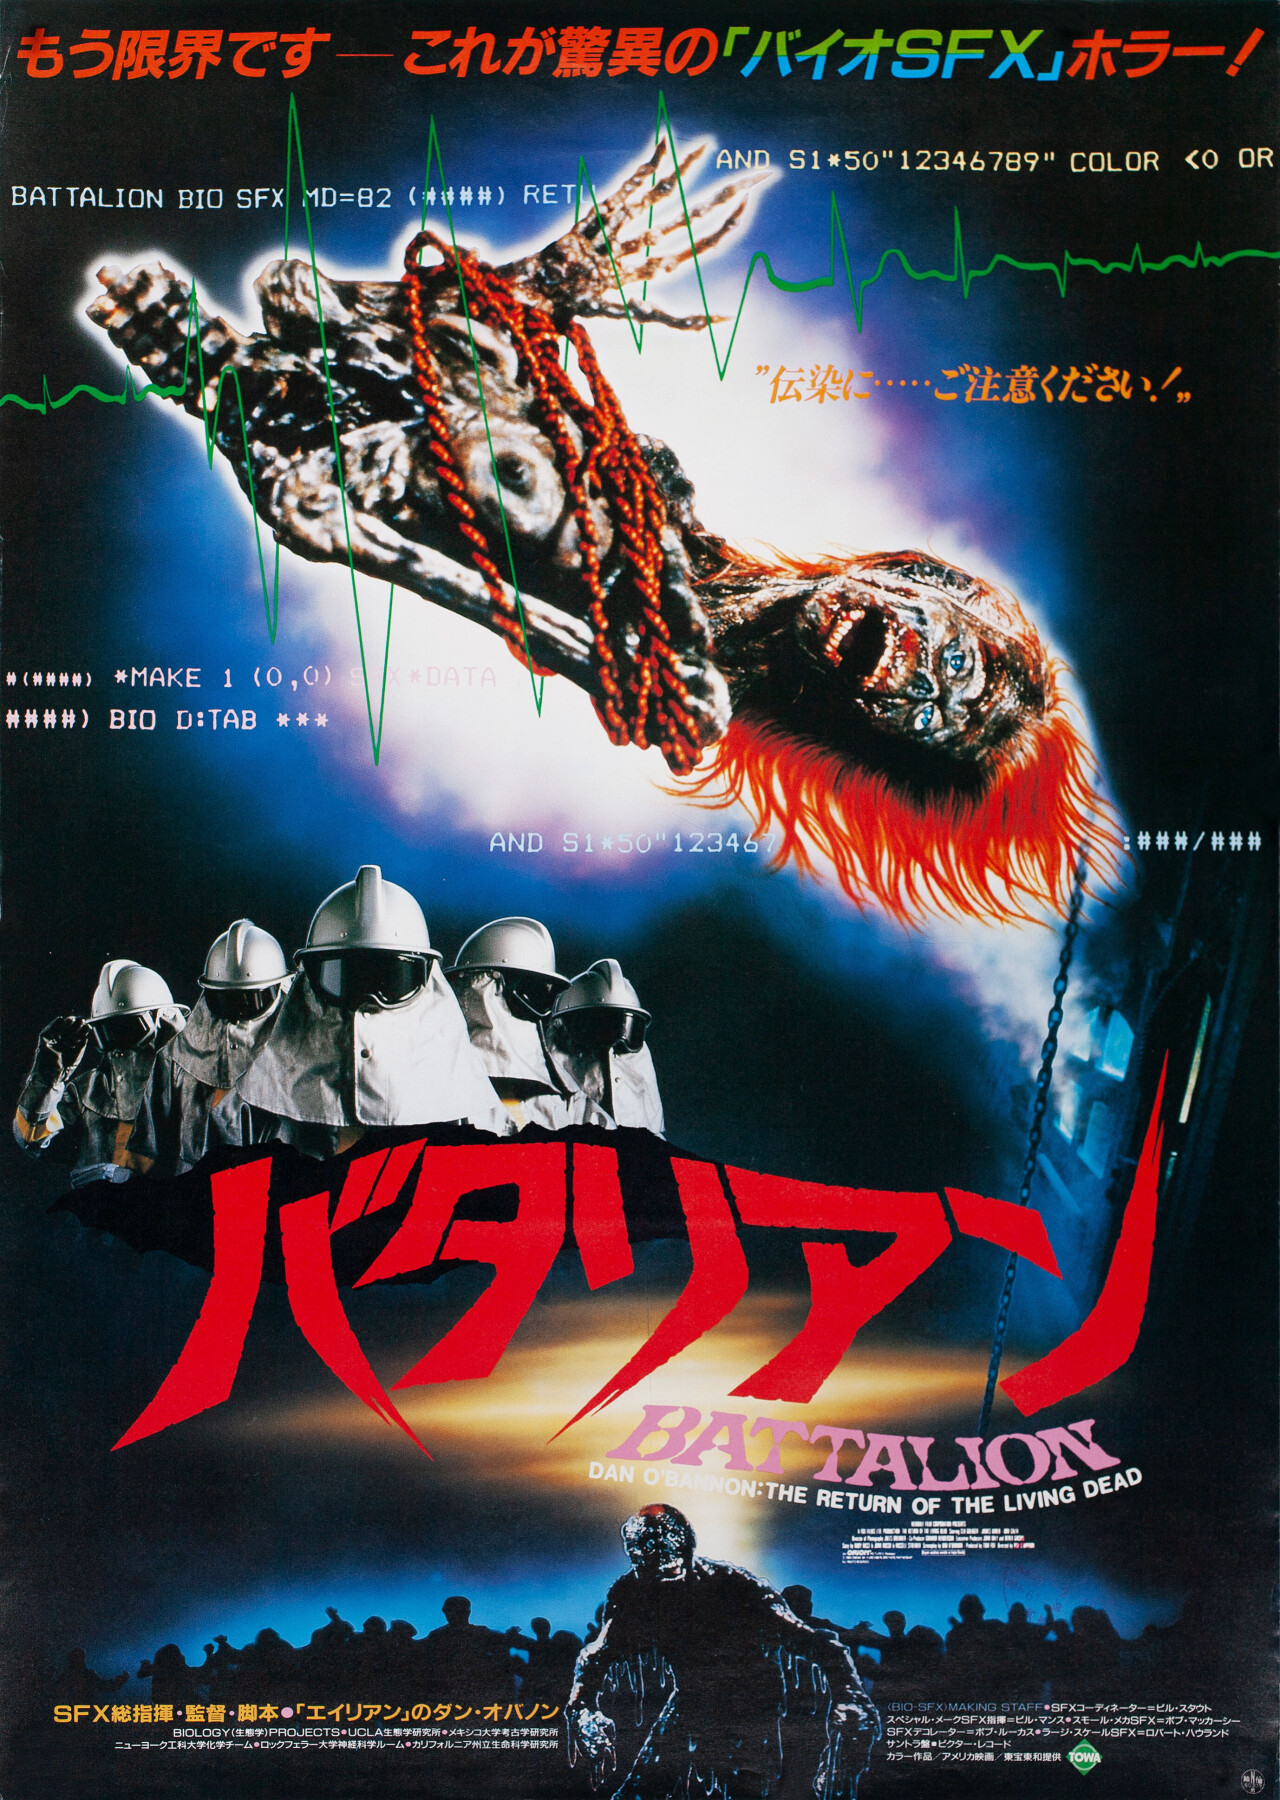 Возвращение живых мертвецов (The Return of the Living Dead, 1985), режиссёр Дэн О’Бэннон, японский постер к фильму (зомби, 1985 год)